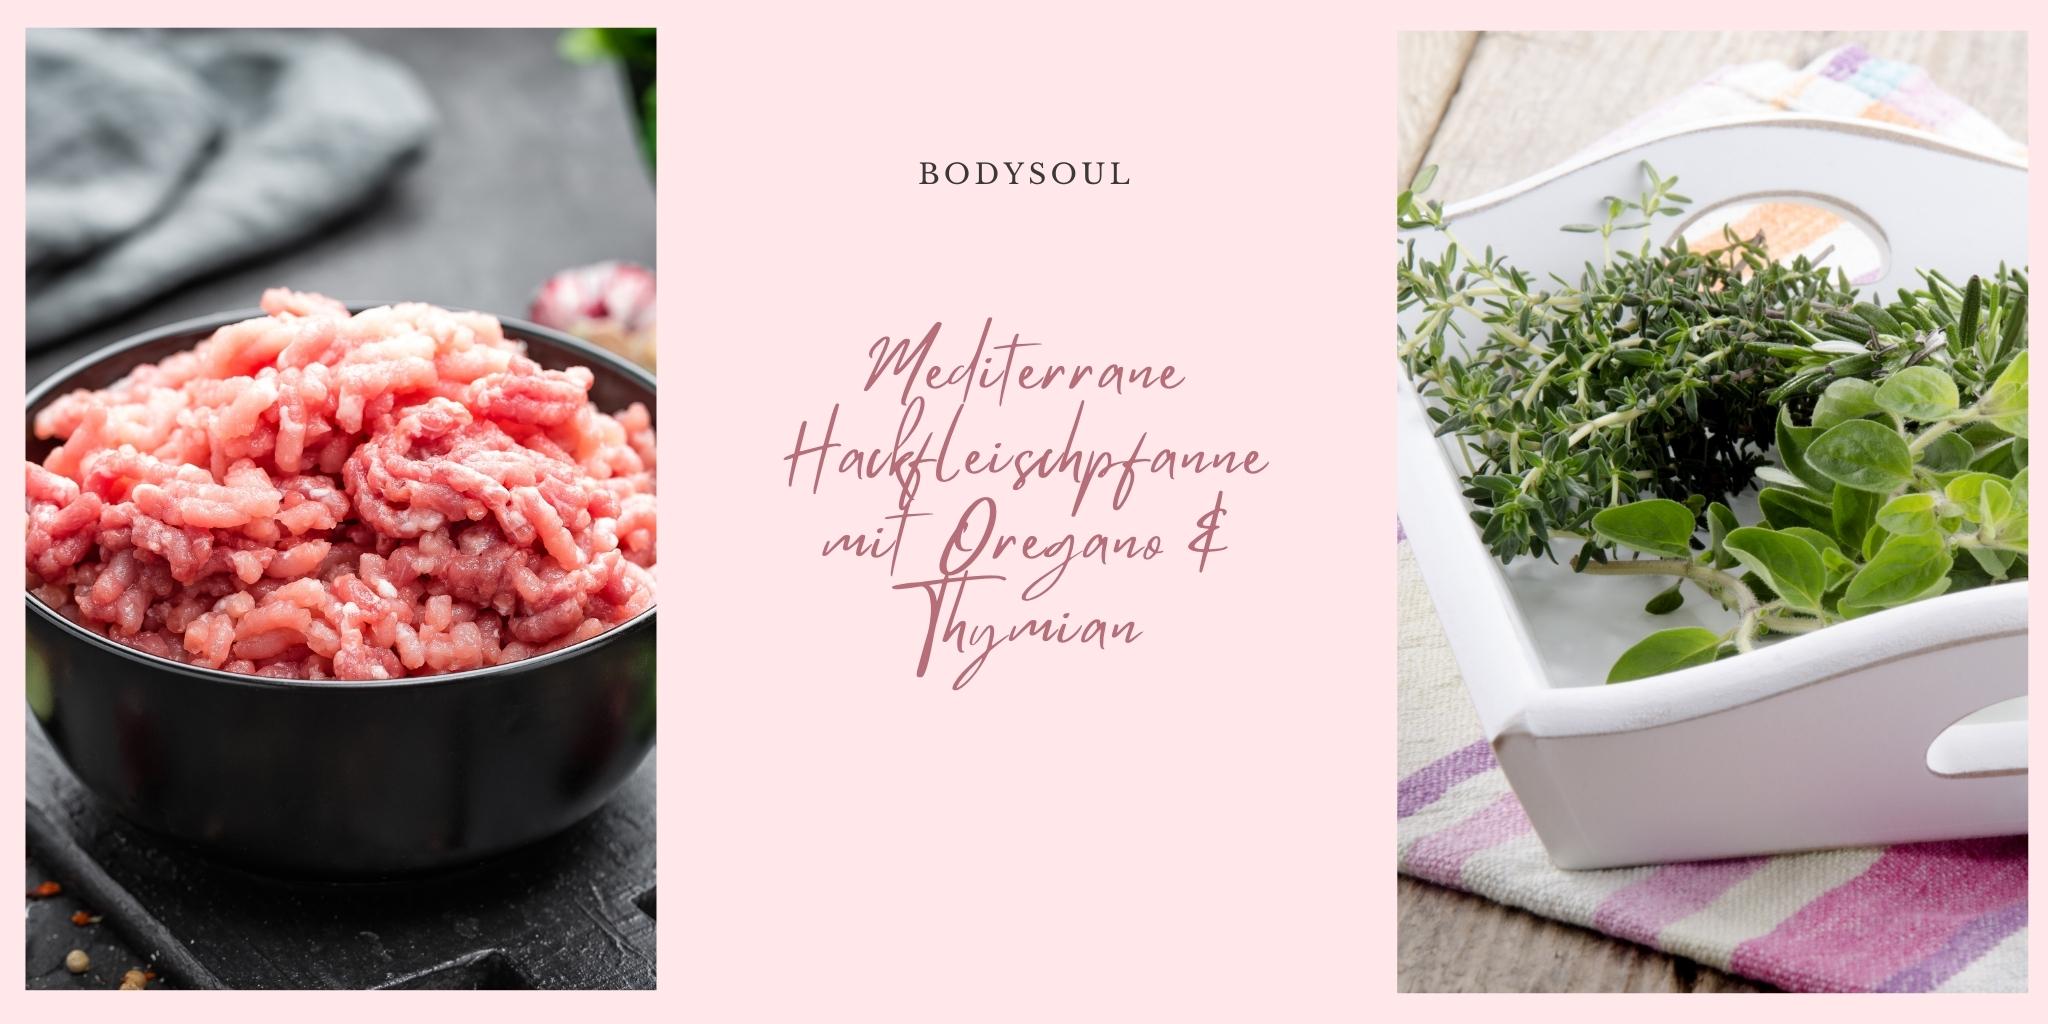 Bodysoul-Mediterrane-Hackfleischpfanne-mit-Oregano-und-Thymian